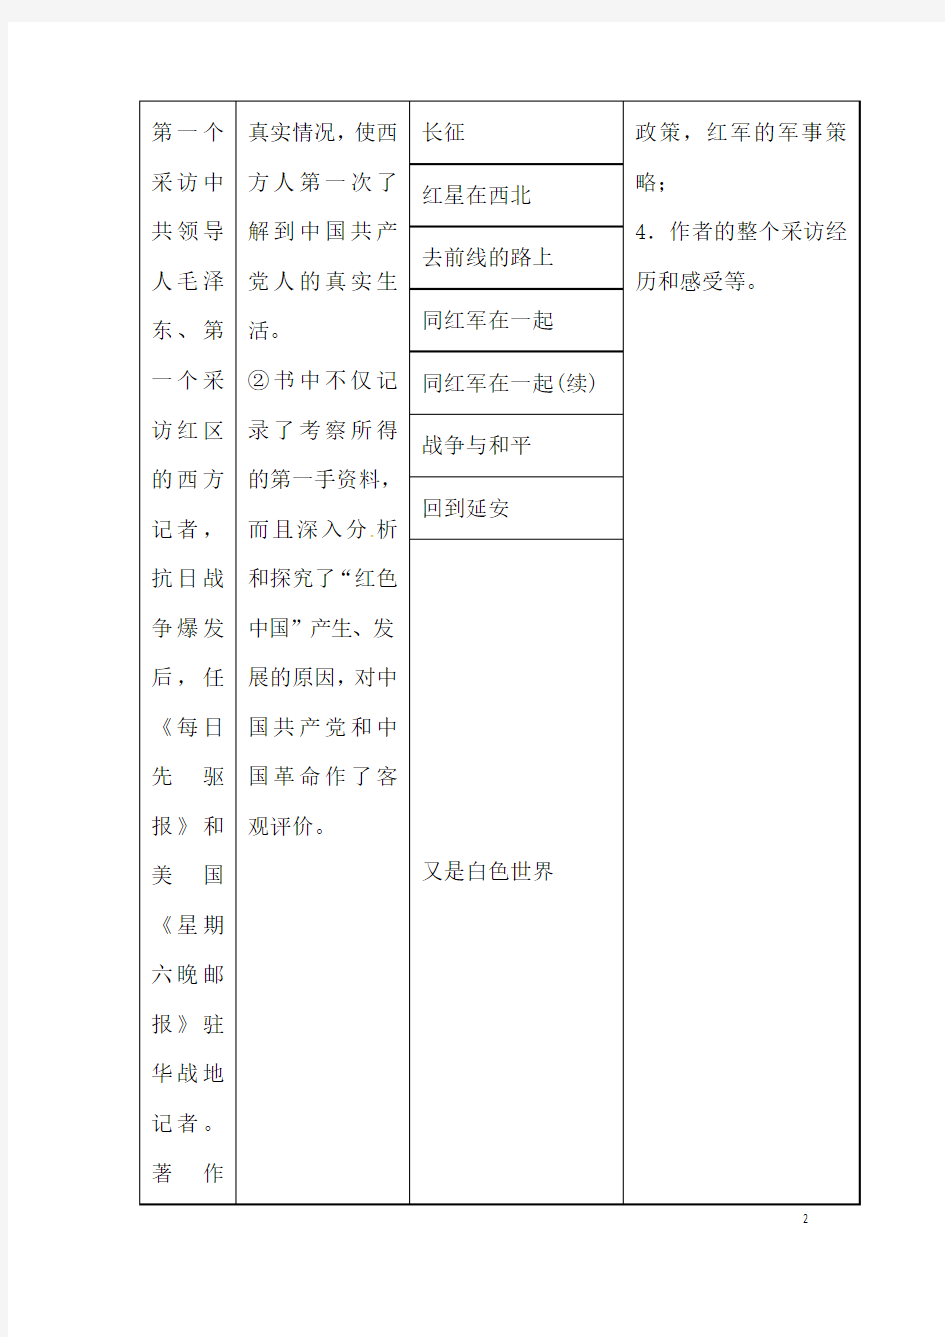 (名师整理)语文中考《红星照耀中国》名著导读优秀教案